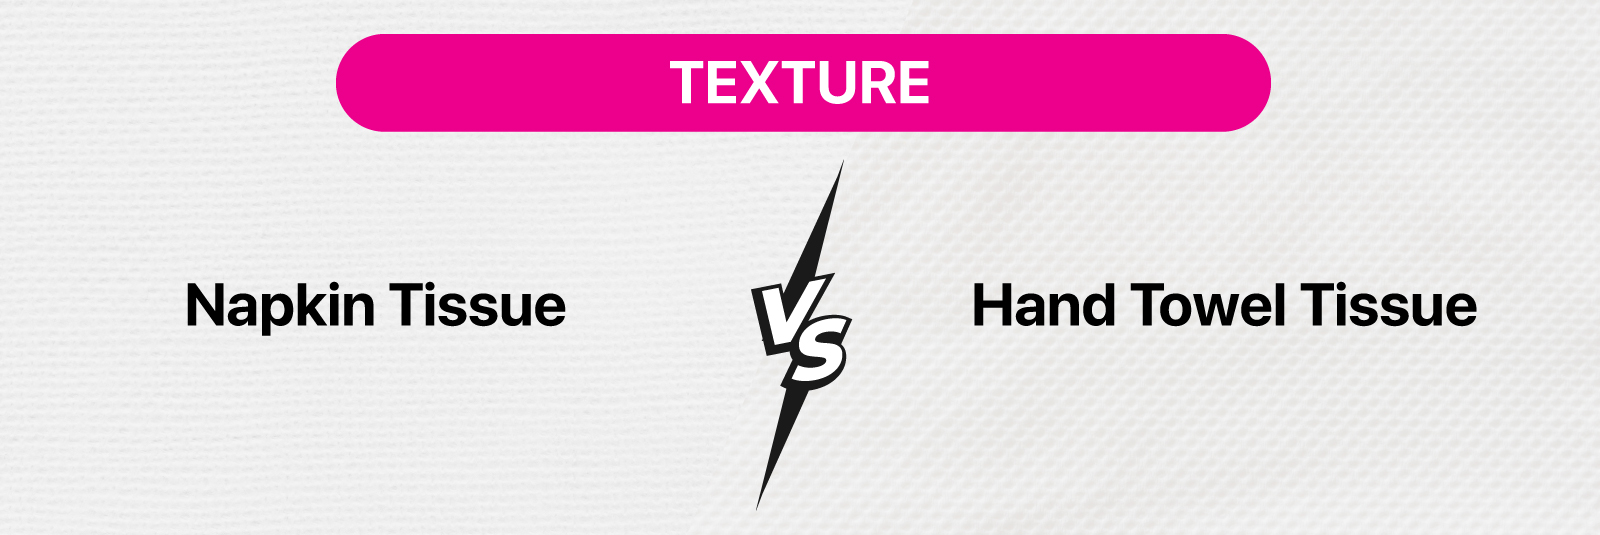 Texture - Napkin Tissue vs Hand Towel Tissue